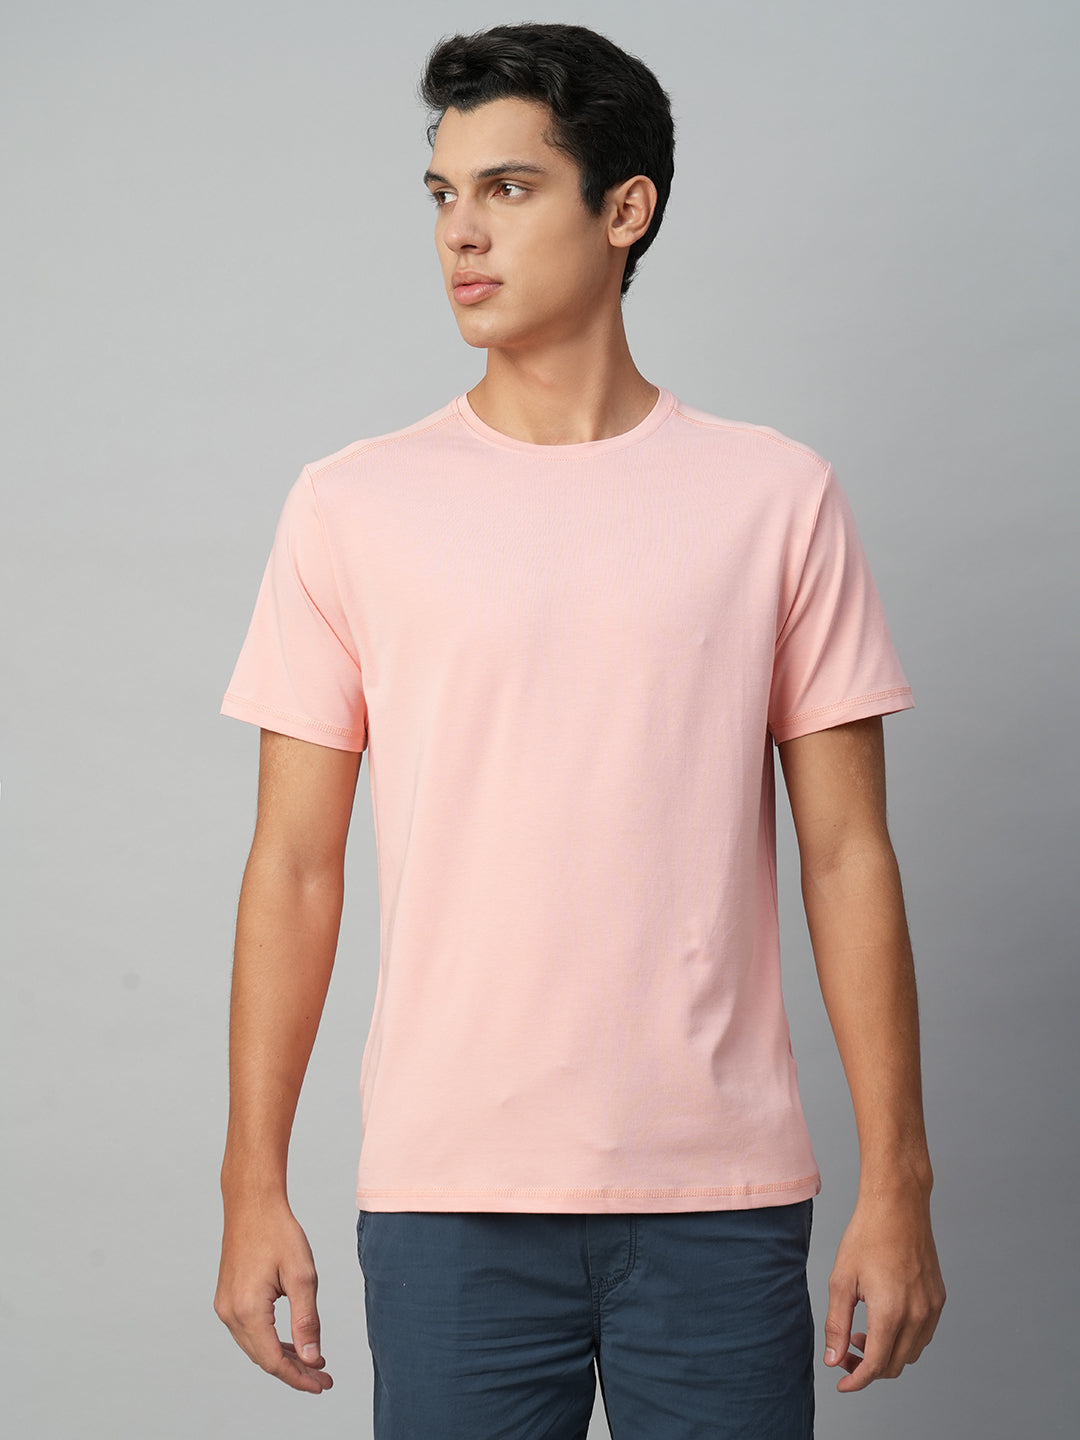 Men's Cotton Bamboo Elastane Pink Regular Fit Tshirt